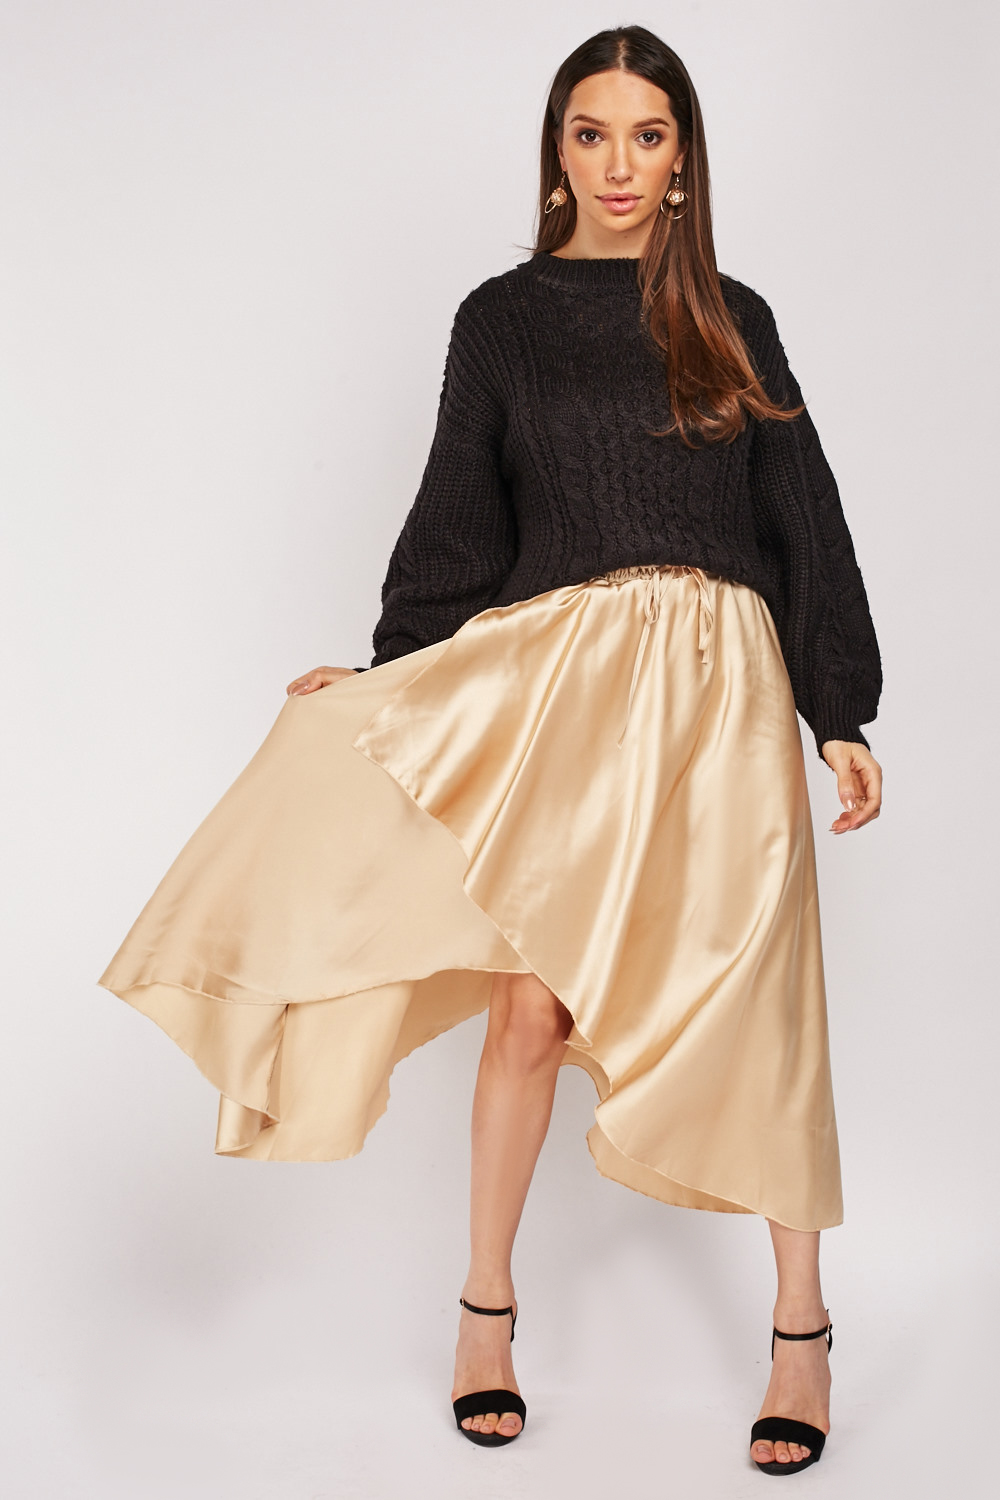 Metallic Tulip Skirt - Just $7